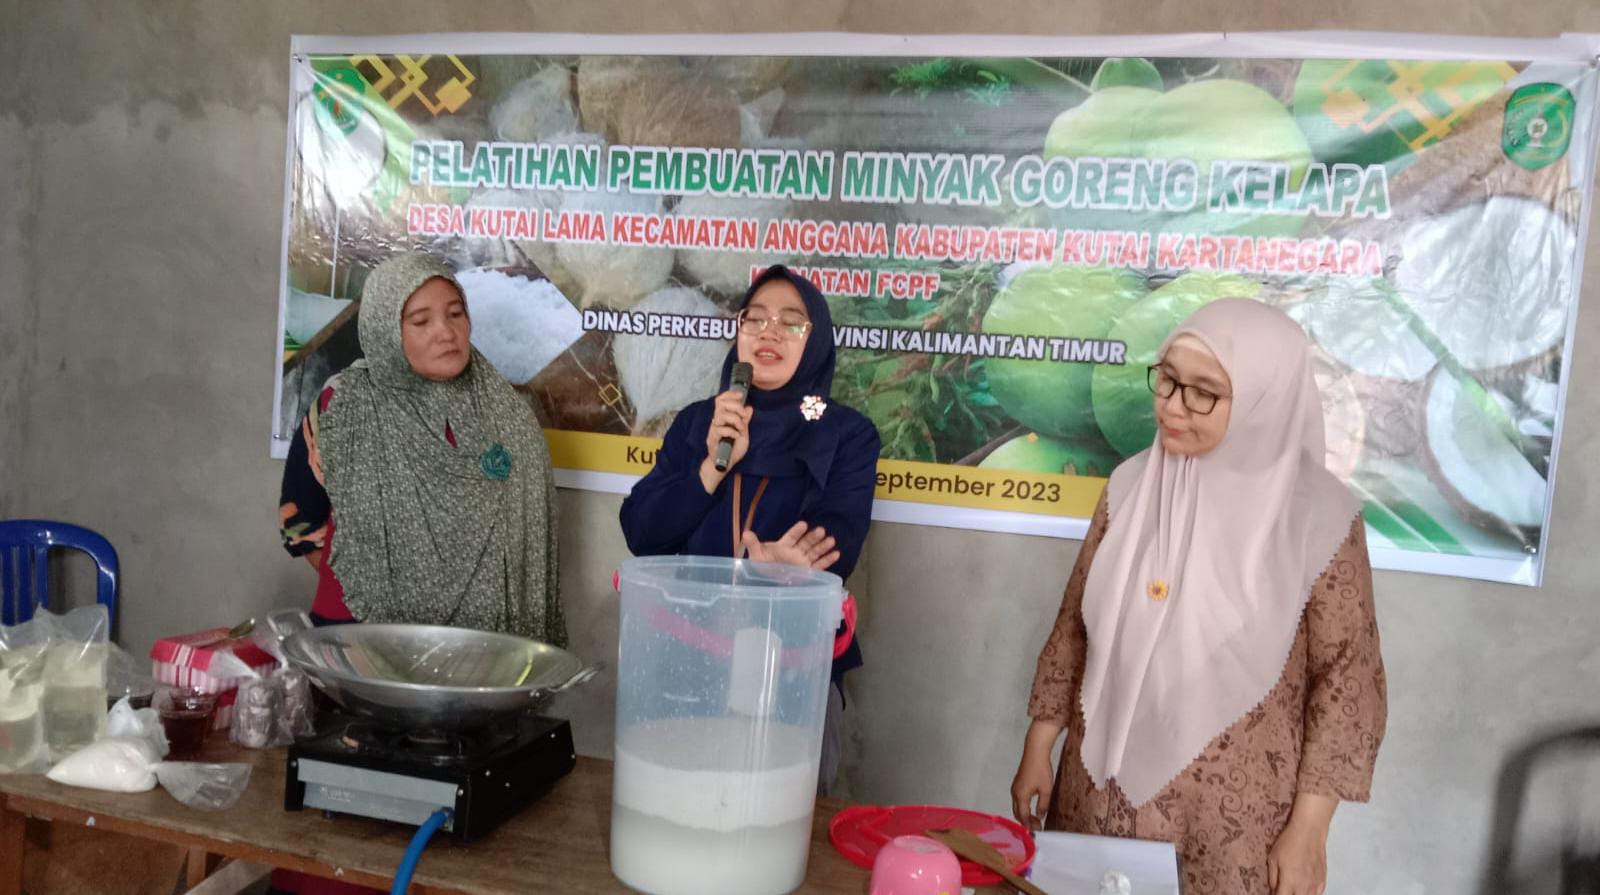 Pelatihan Pembuatan Minyak Goreng Kelapa oleh Dinas Perkebunan Provinsi Kalimantan Timur di Kutai Kartanegara (dok. pribadi)